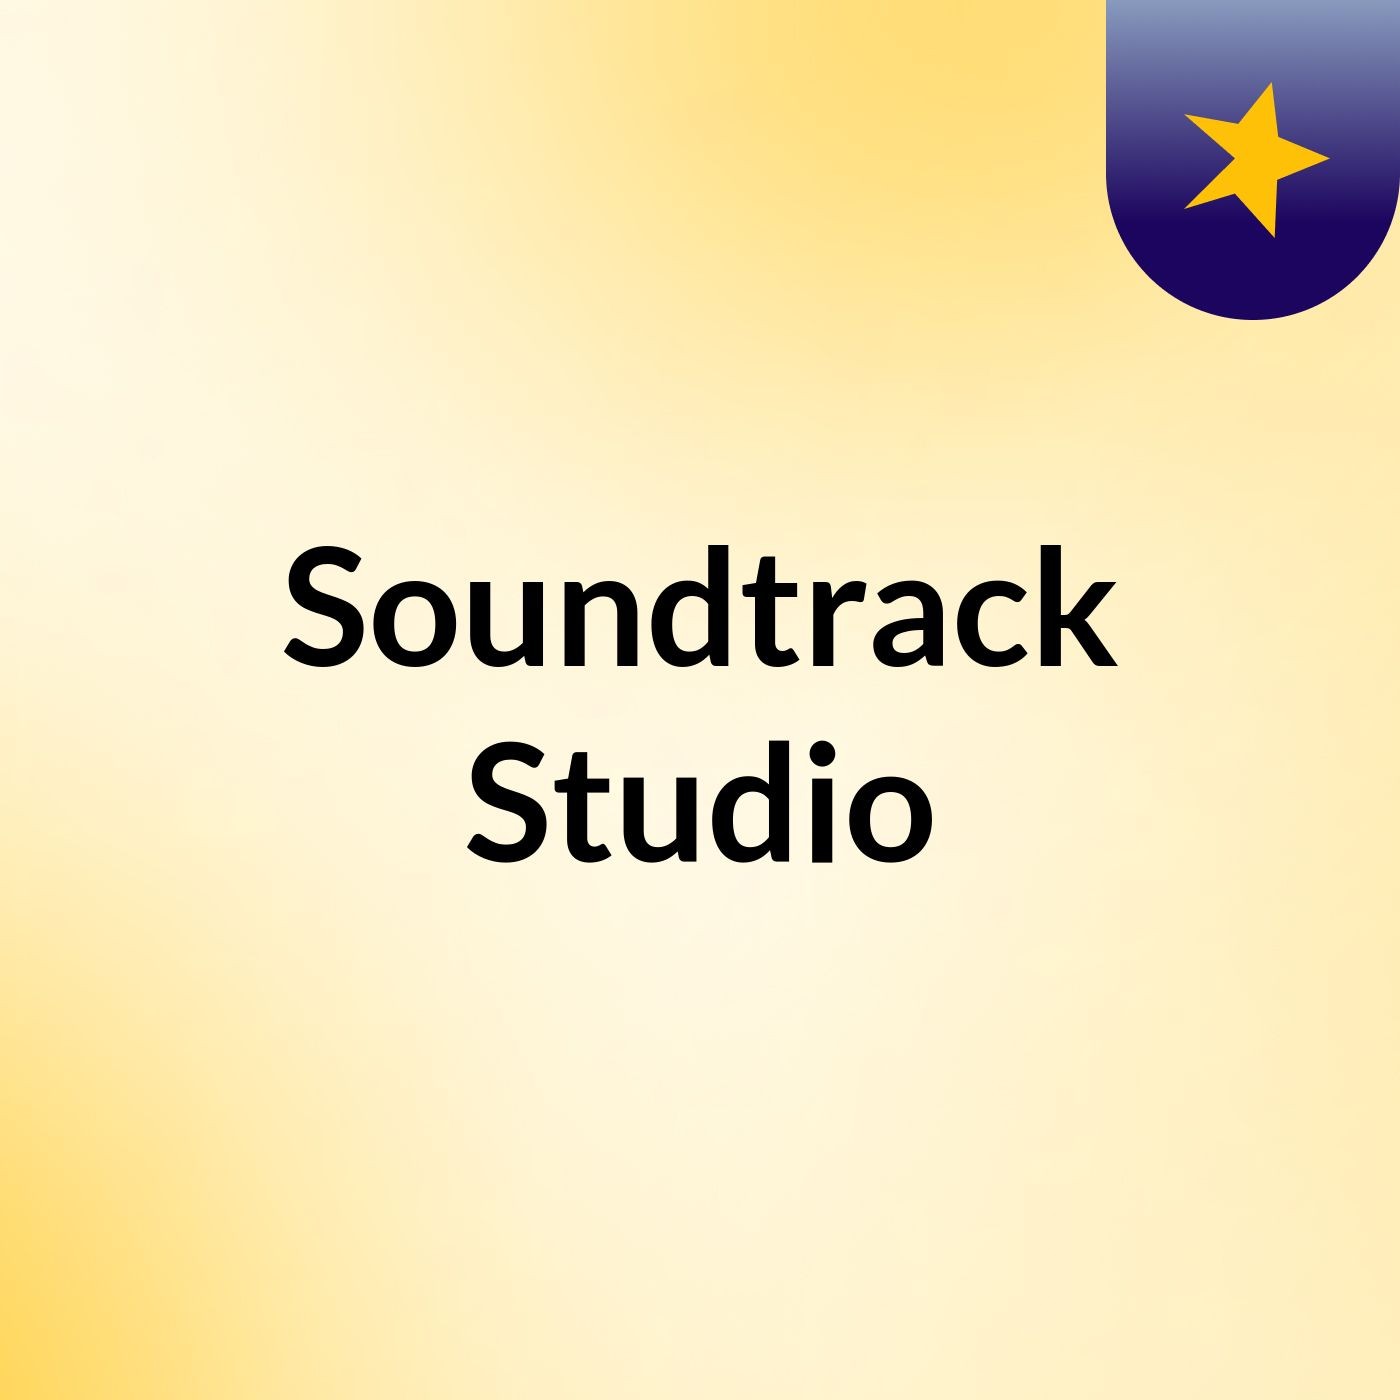 Soundtrack Studio